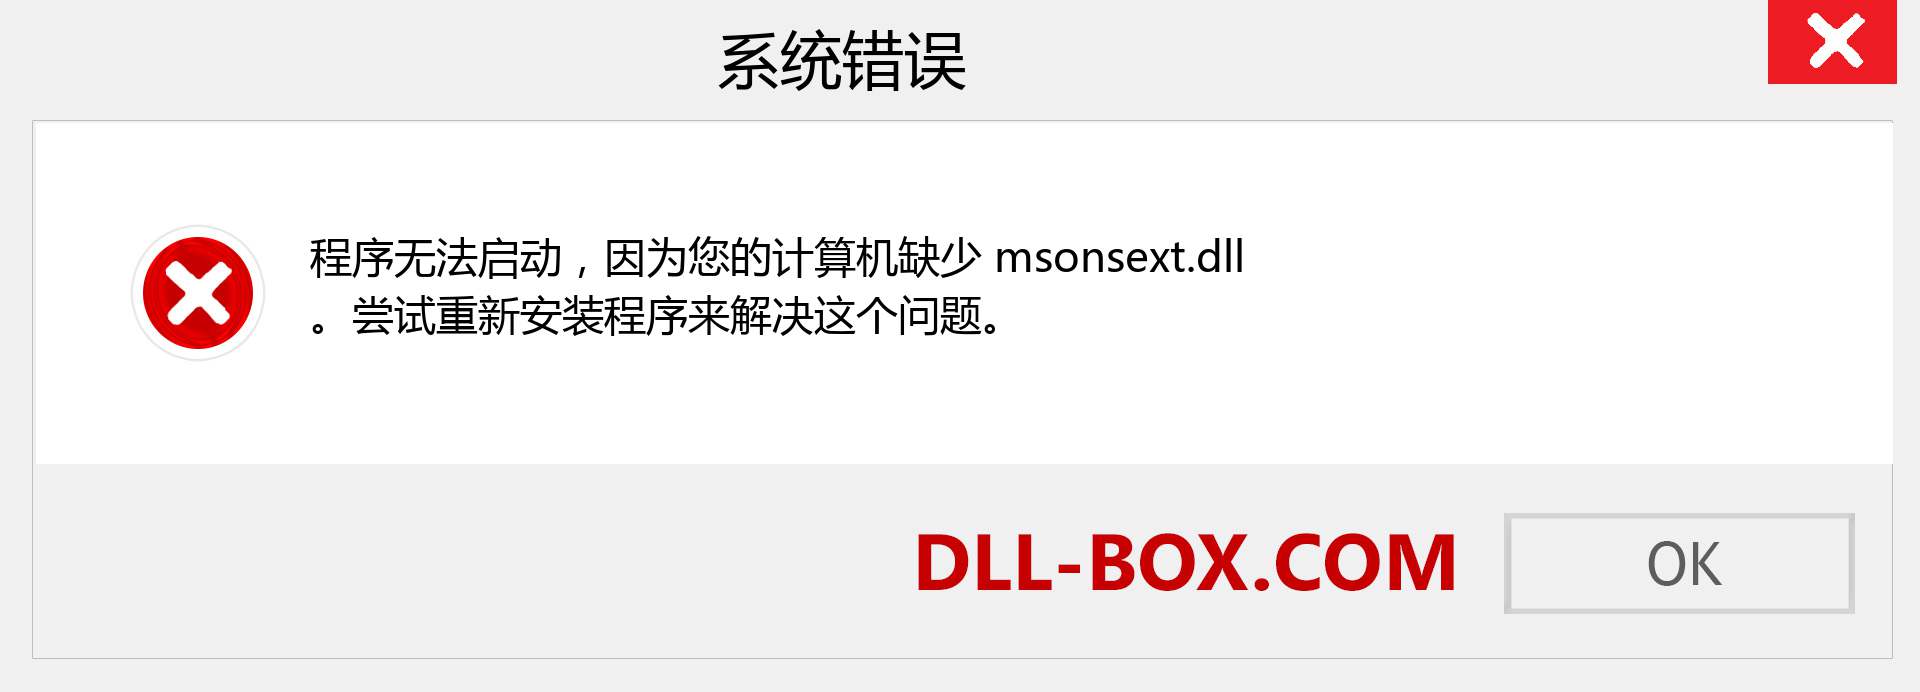 msonsext.dll 文件丢失？。 适用于 Windows 7、8、10 的下载 - 修复 Windows、照片、图像上的 msonsext dll 丢失错误